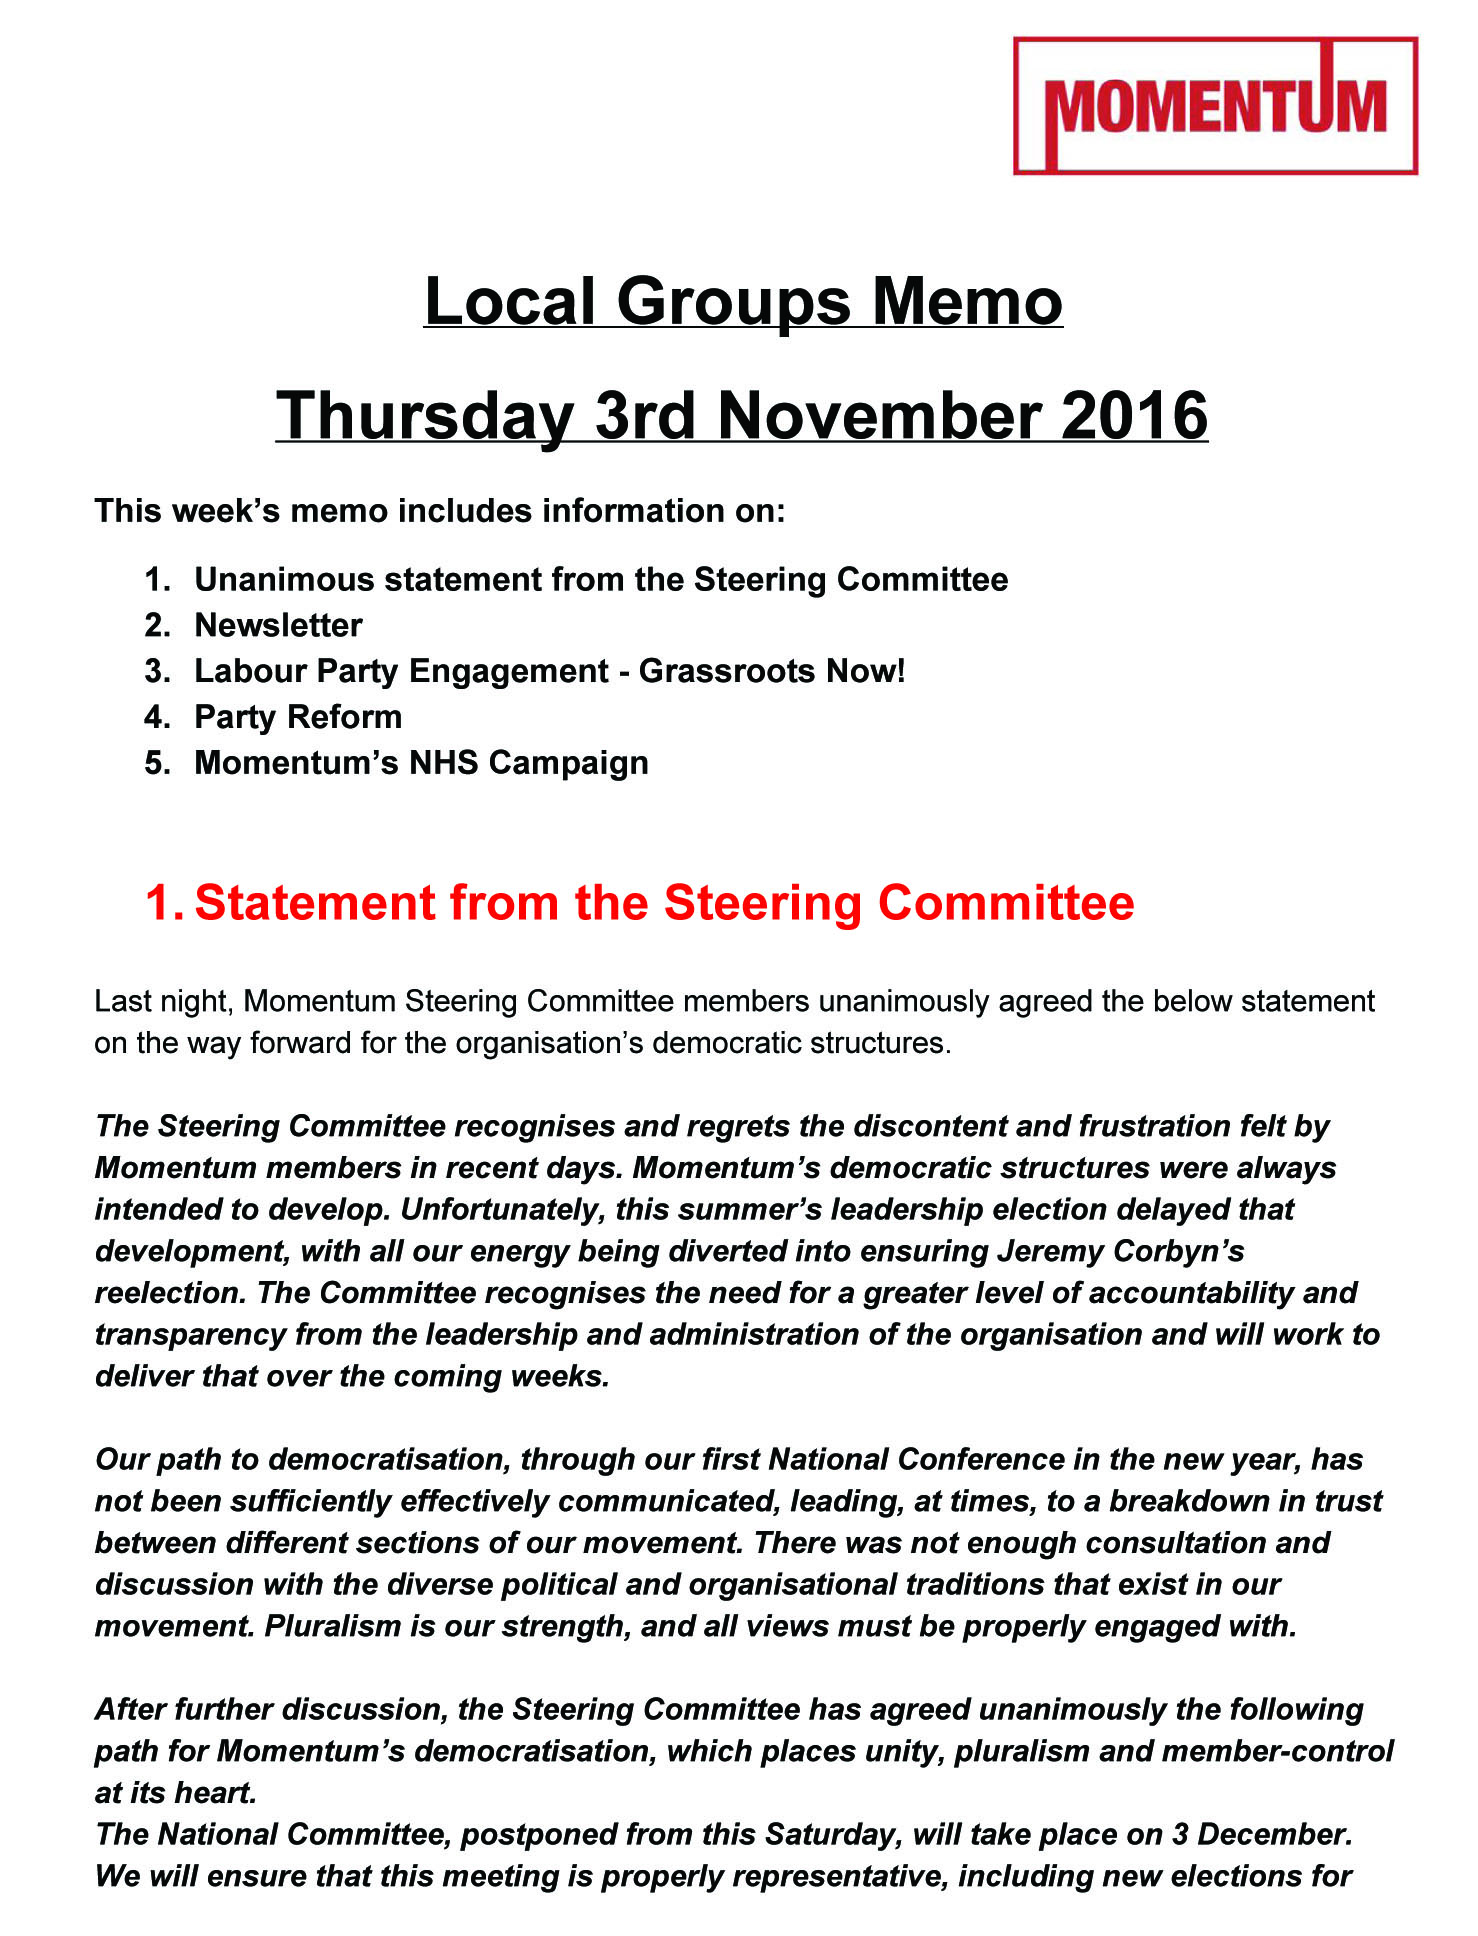 Momentum Local Groups Memo November 3 2016